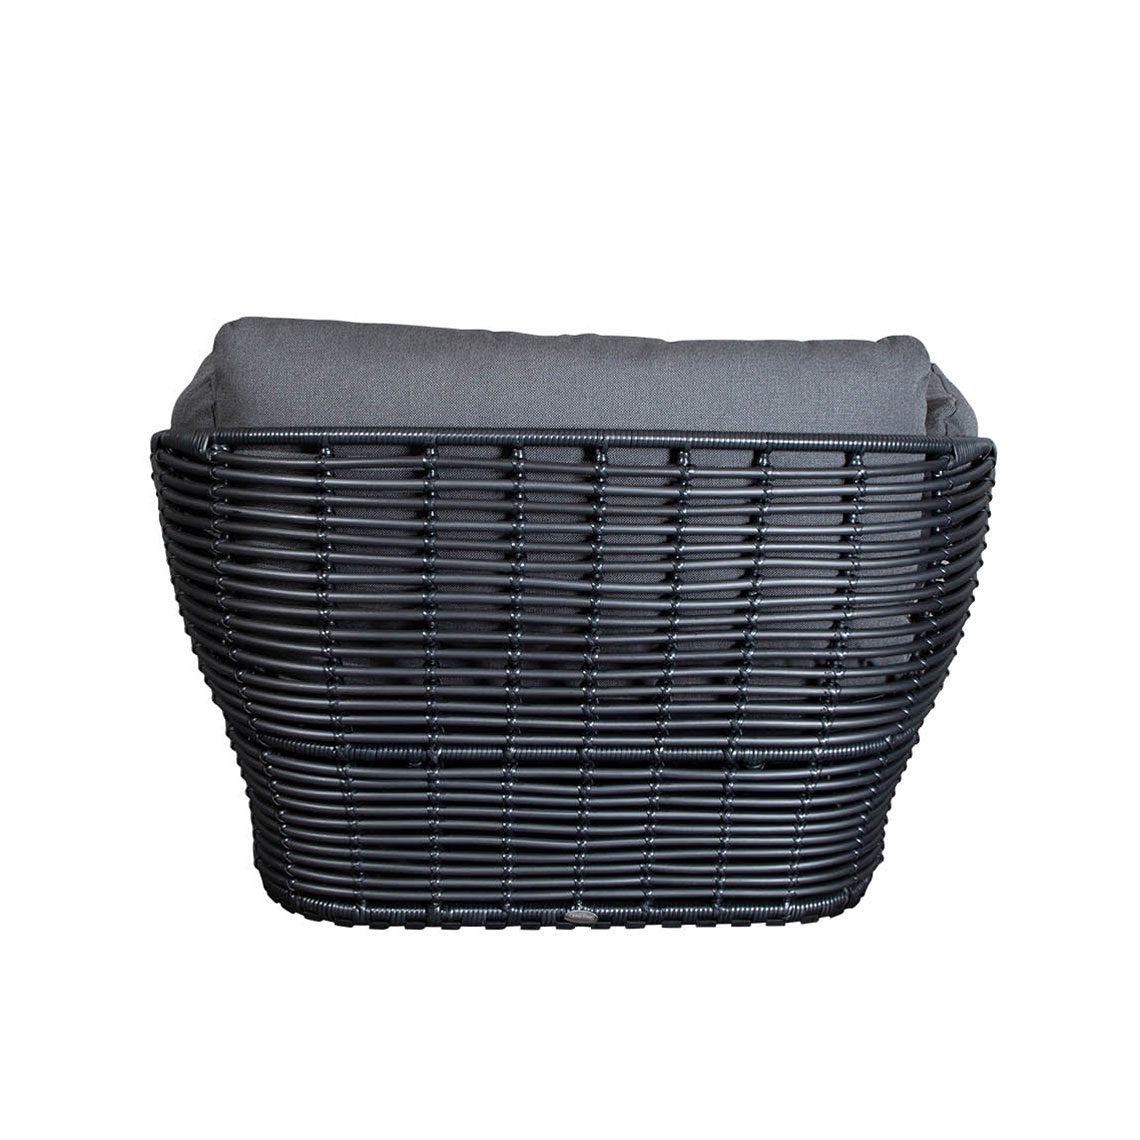 Basket Loungesessel von Cane-line